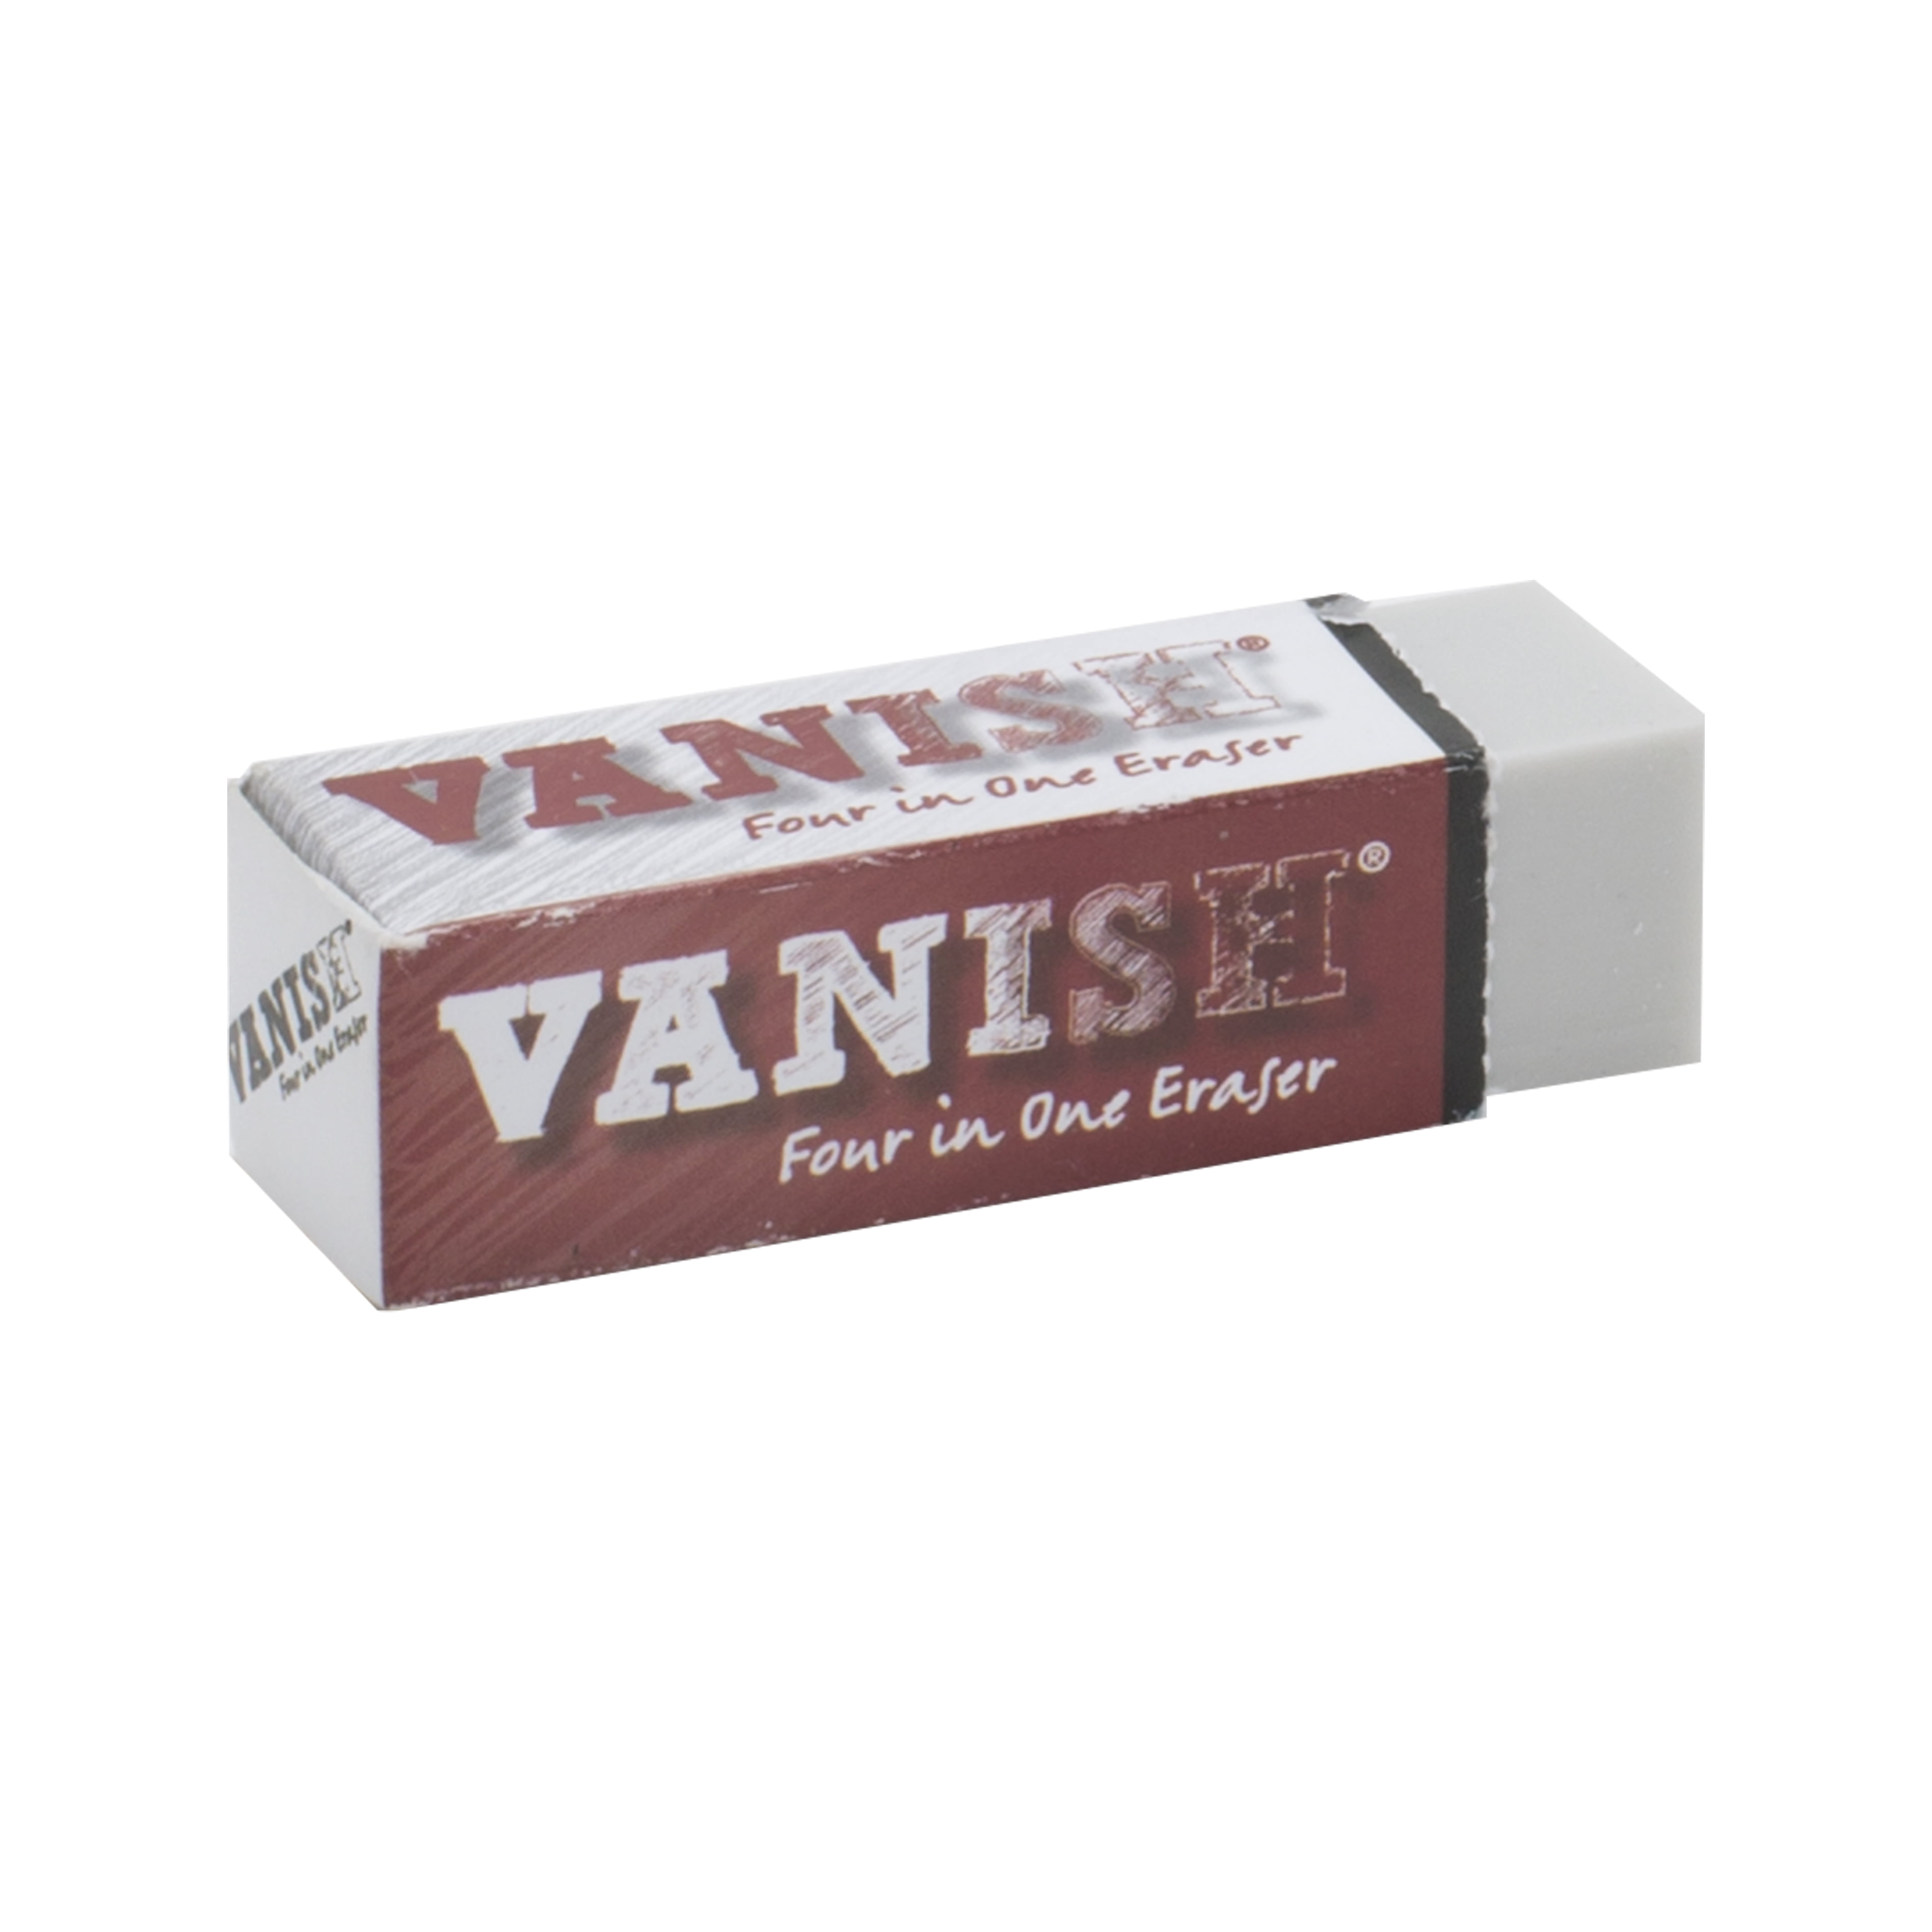  Acurit Vanish Artist Eraser (30 Pack)– 4-in-1 White